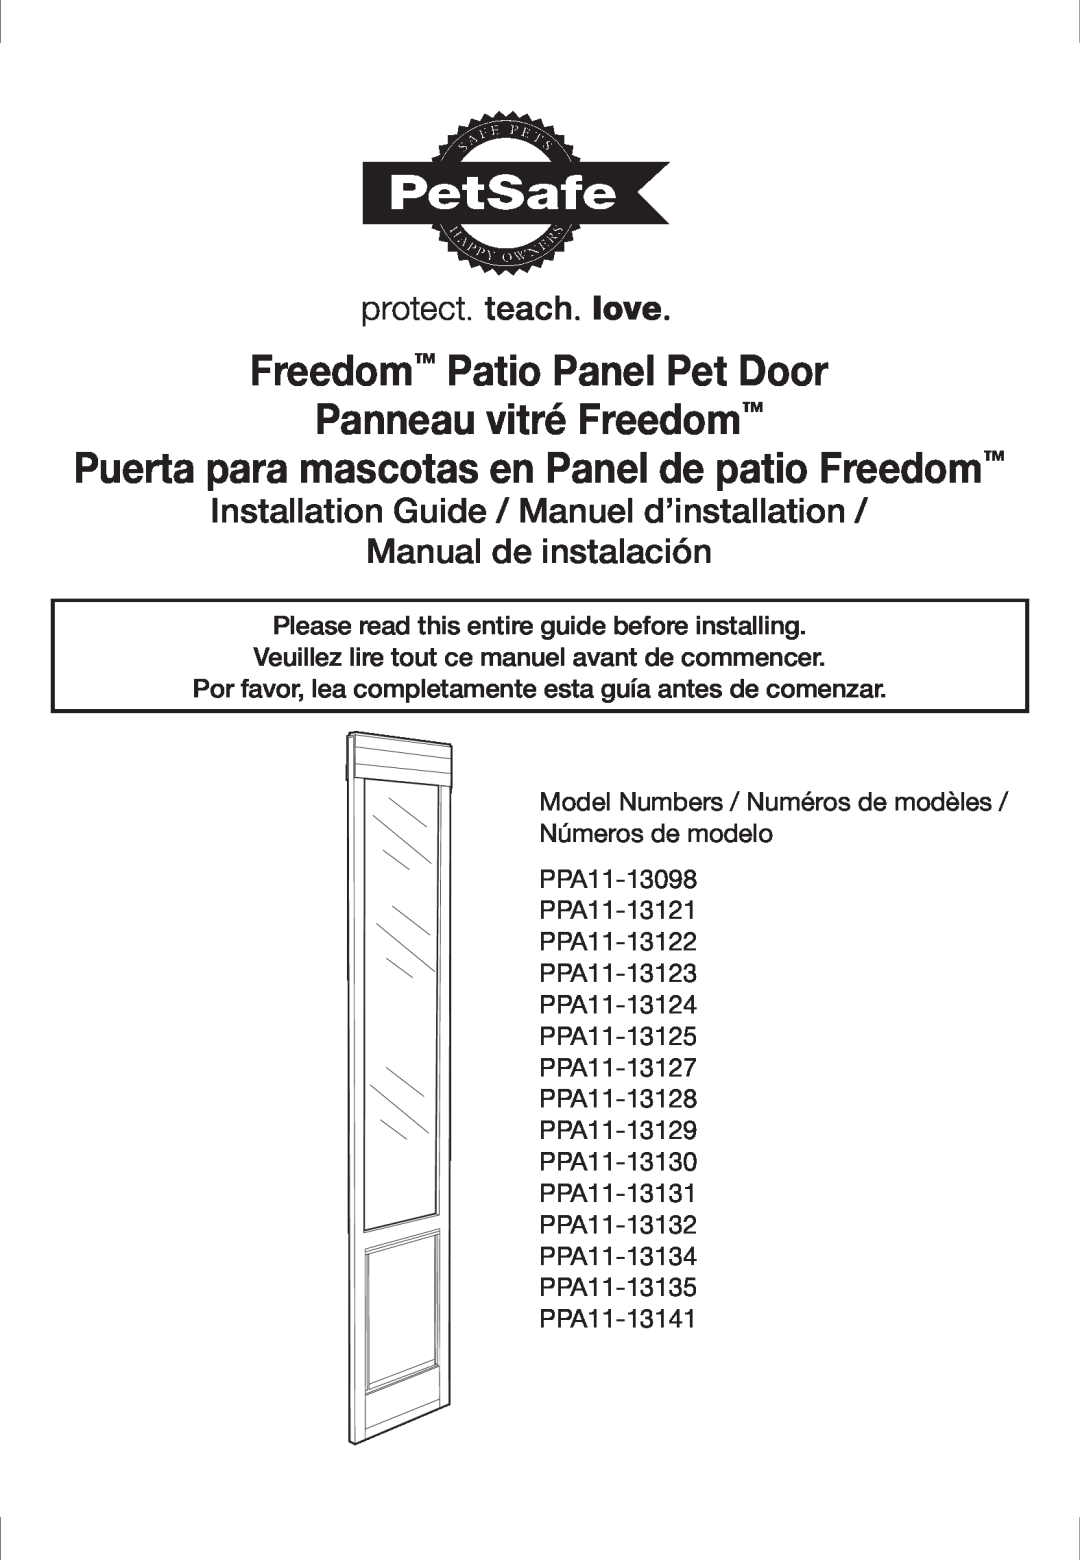 Petsafe PPA11-13135 installation manual Puerta para mascotas en Panel de patio Freedom, Freedom Patio Panel Pet Door 